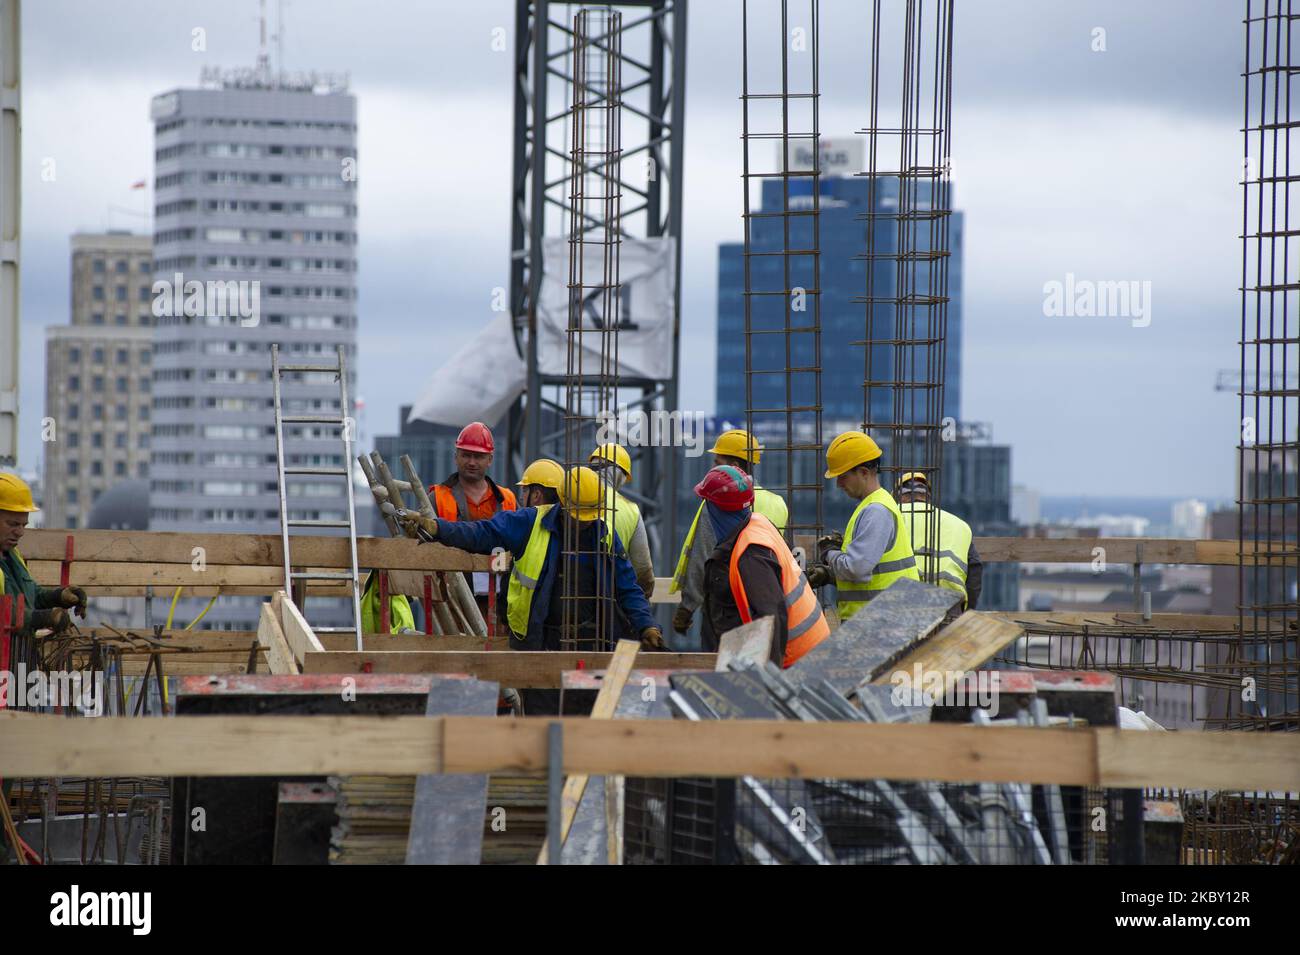 Los constructores son vistos en el sitio de trabajo de Skysawa el 2 de septiembre de 2020 en Varsovia, Polonia. Skysawa es un proyecto de oficinas de clase A de gran altura que ofrecerá aproximadamente un total de 39,000 metros cuadrados de espacio de trabajo. La fecha límite de construcción es alrededor de las Q2 2022. (Foto de Aleksander Kalka/NurPhoto) Foto de stock